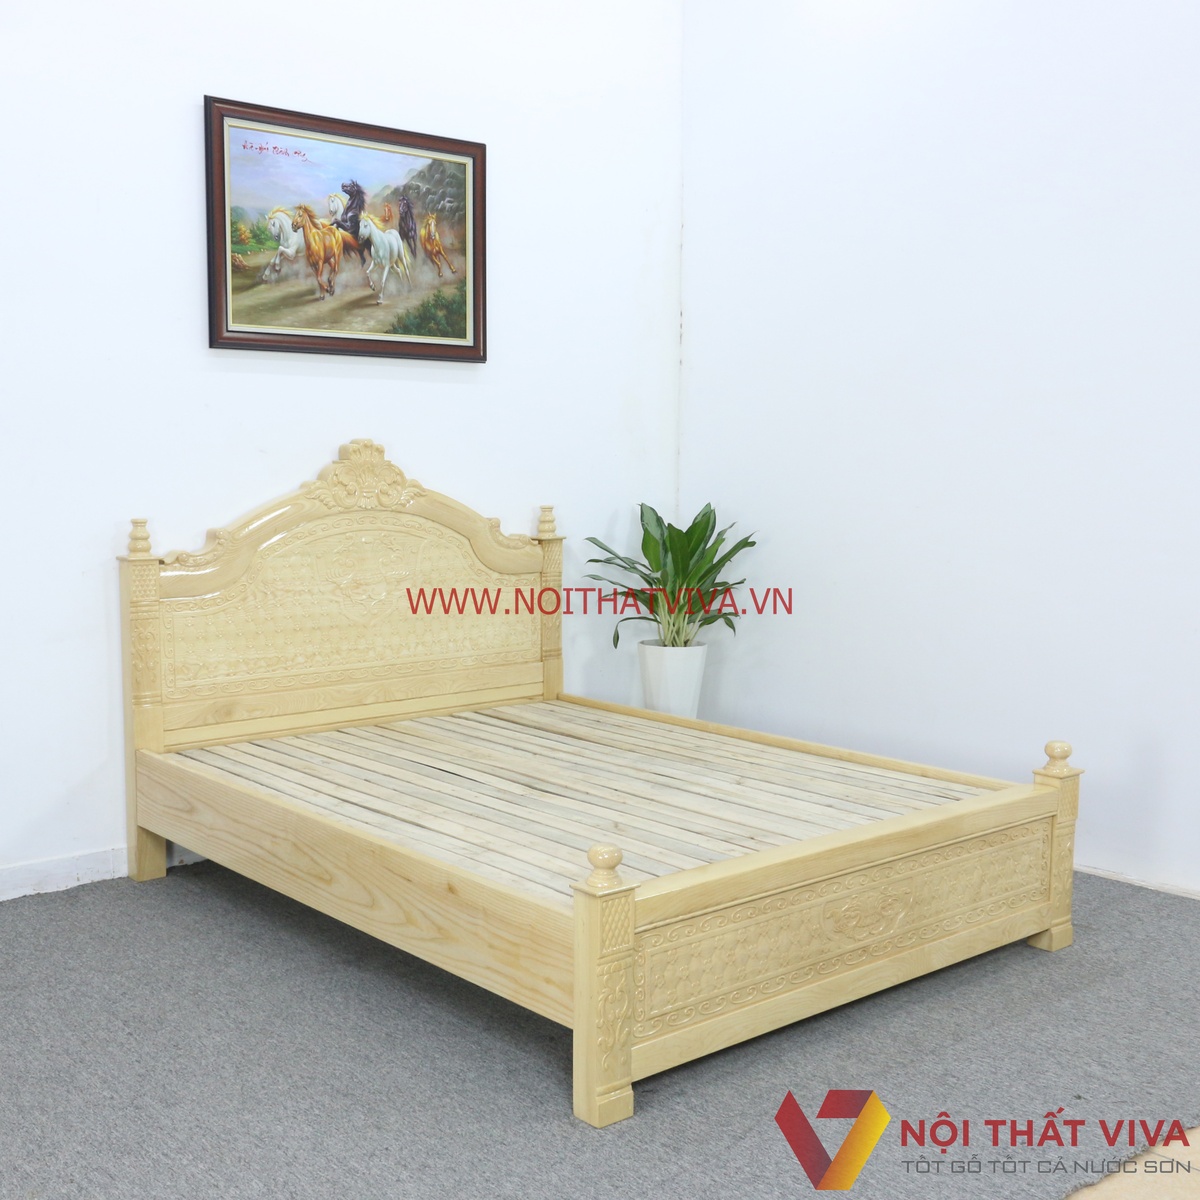 giá giường ngủ gỗ tự nhiên